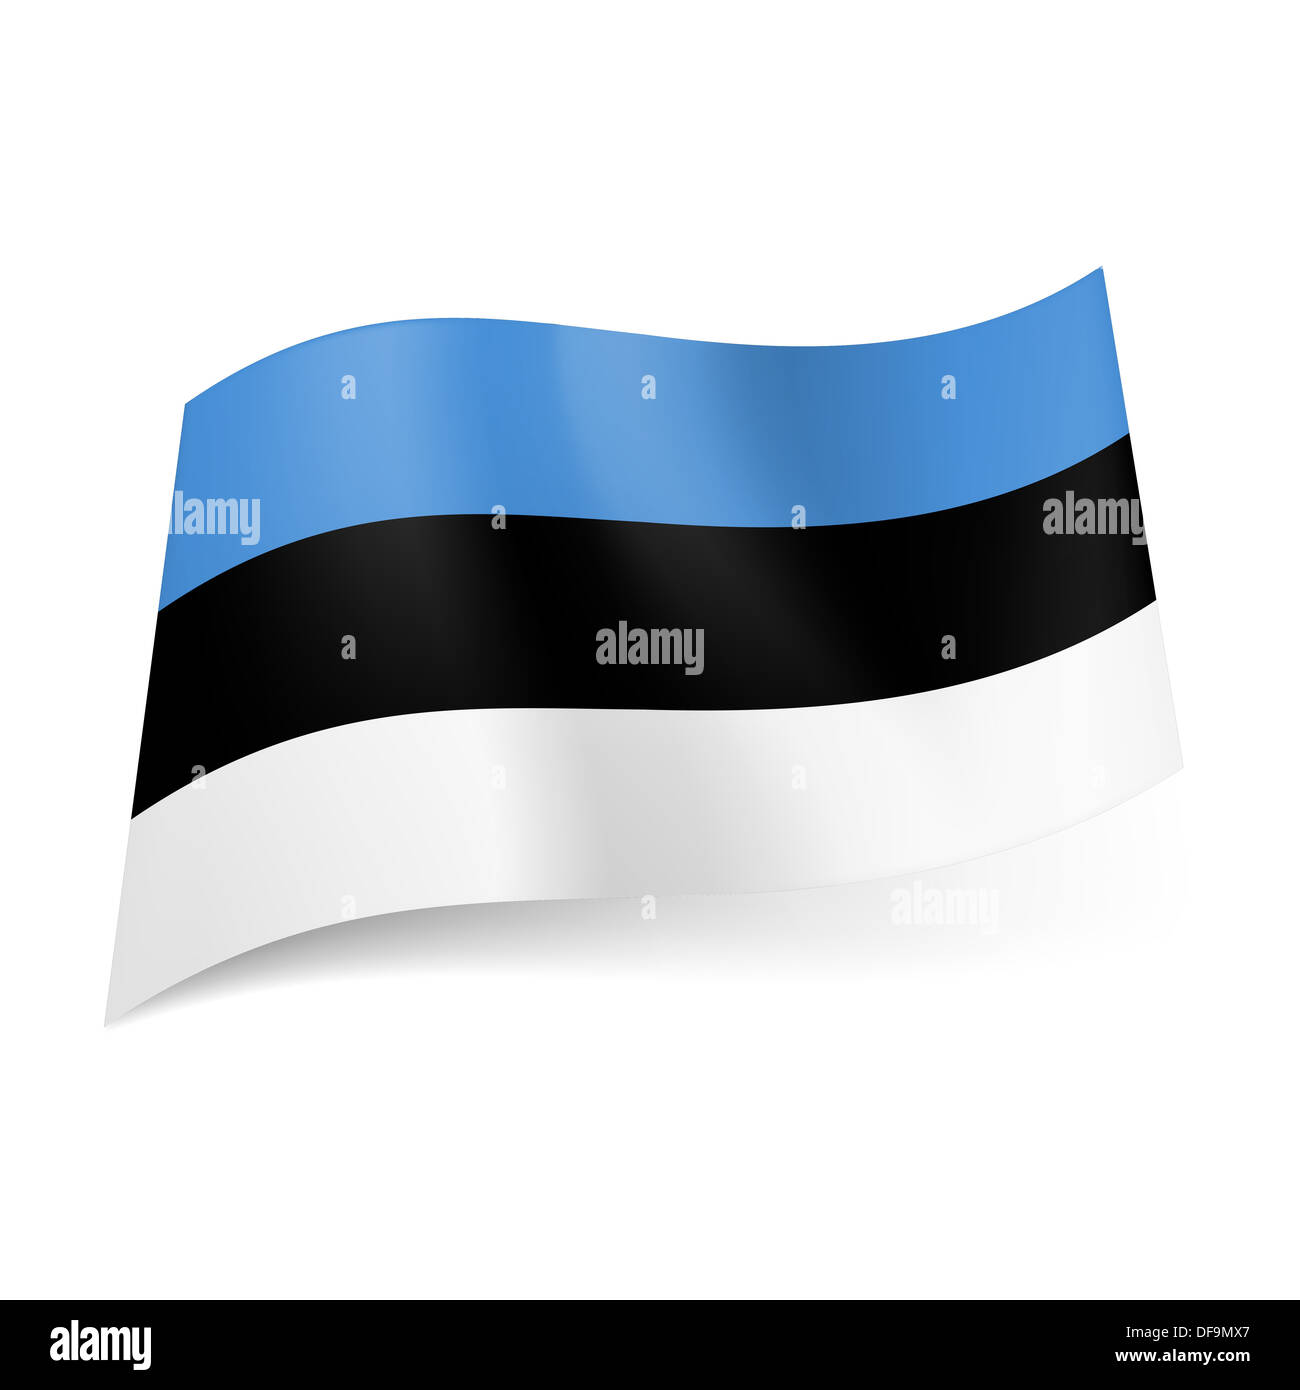 National flag of Estonia: blue, black and white horizontal stripes. Stock Photo